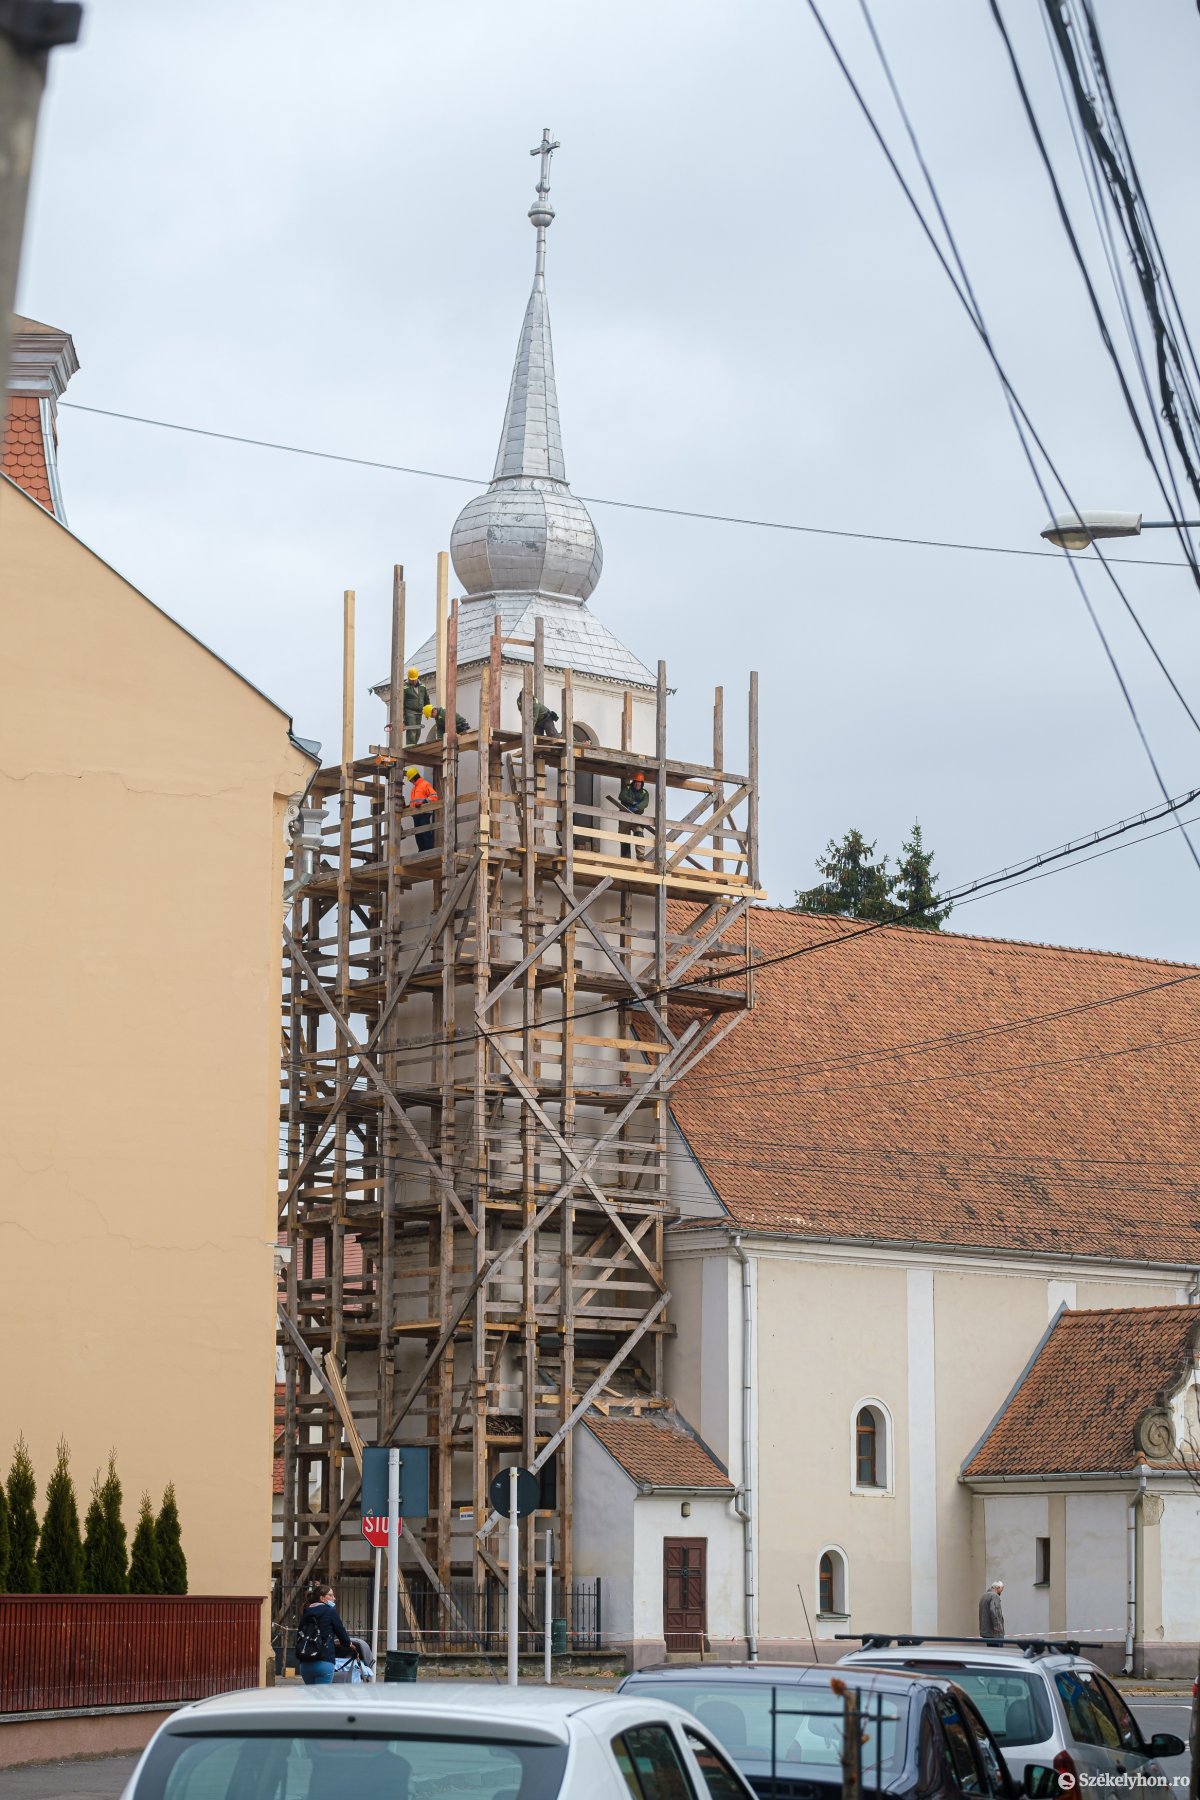 Megdőlt a csíkszeredai Szent Kereszt-templom tornya, szükség van a beavatkozásra